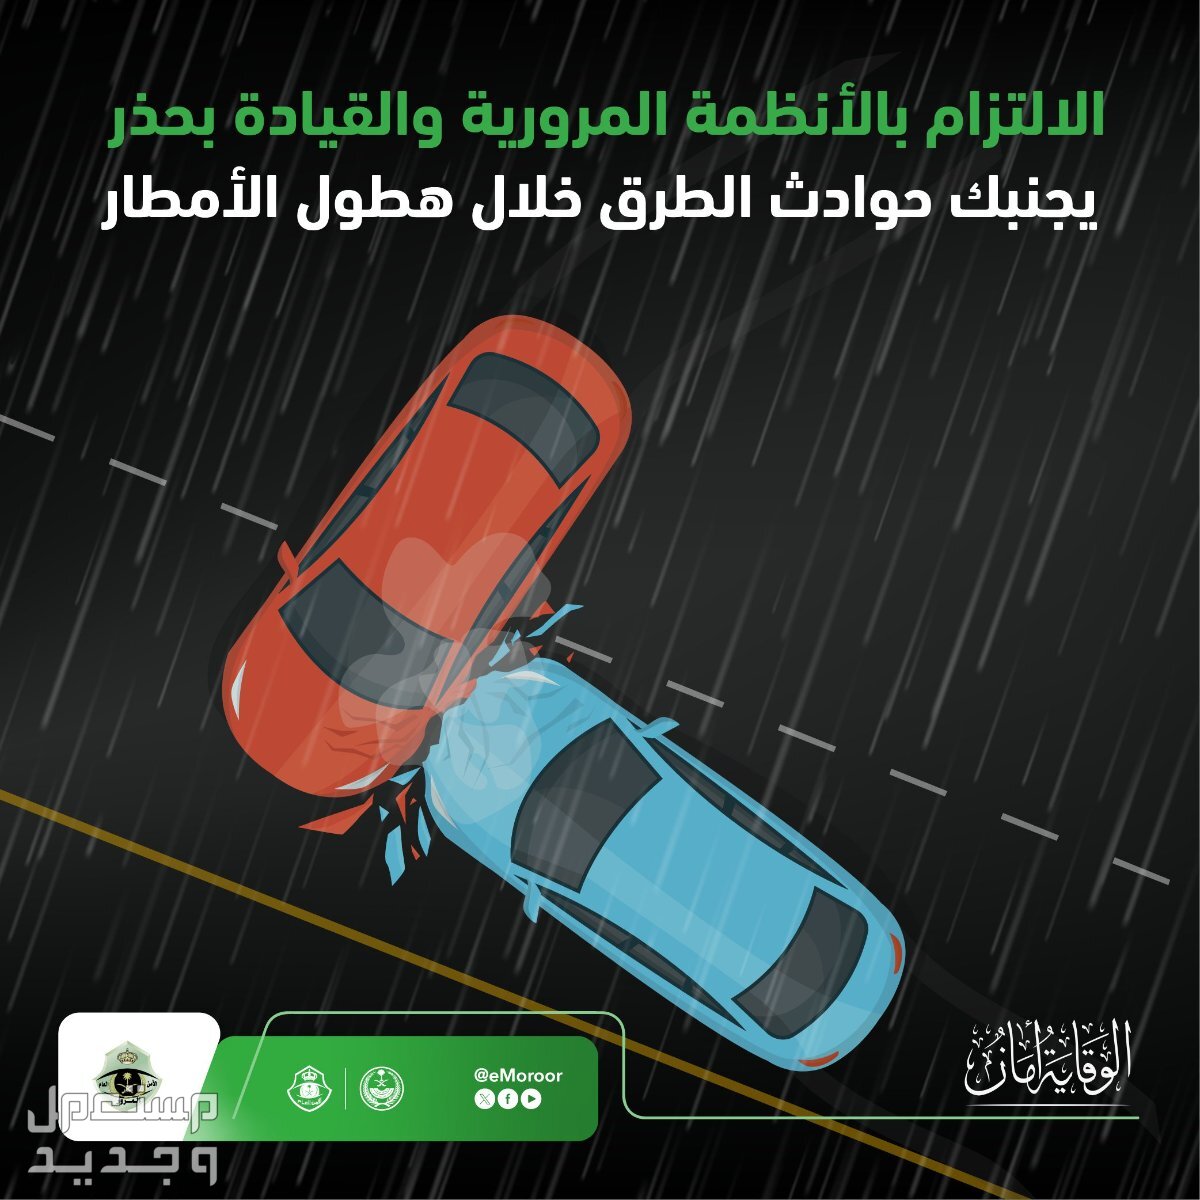 "المرور" يوضح قيمة مخالفة القيادة على الأرصفة والمسارات القيادة أثناء المطر